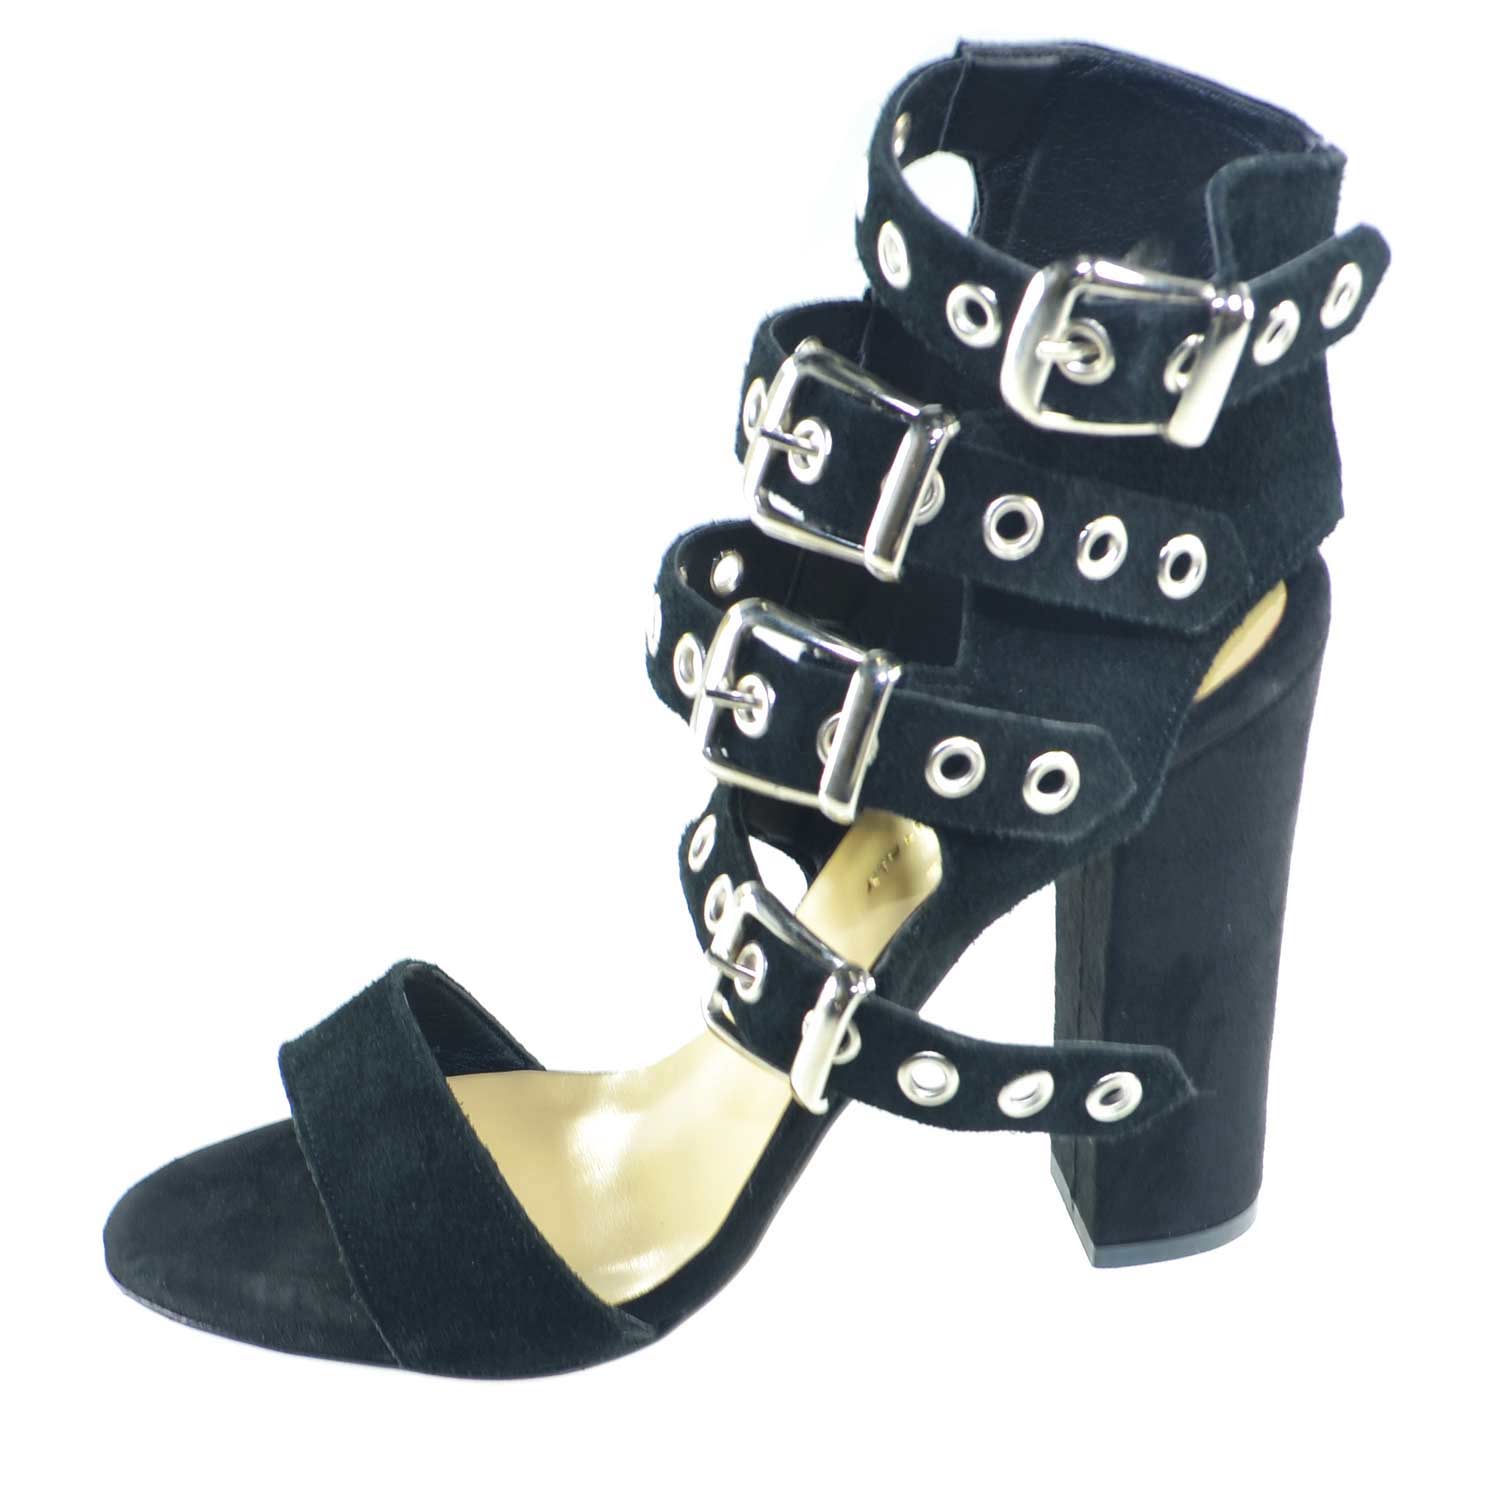 Sandali tacco doppio nero art.st9094 made in italy accessori fibbia argento camoscio moda comfort fondo antiscivolo